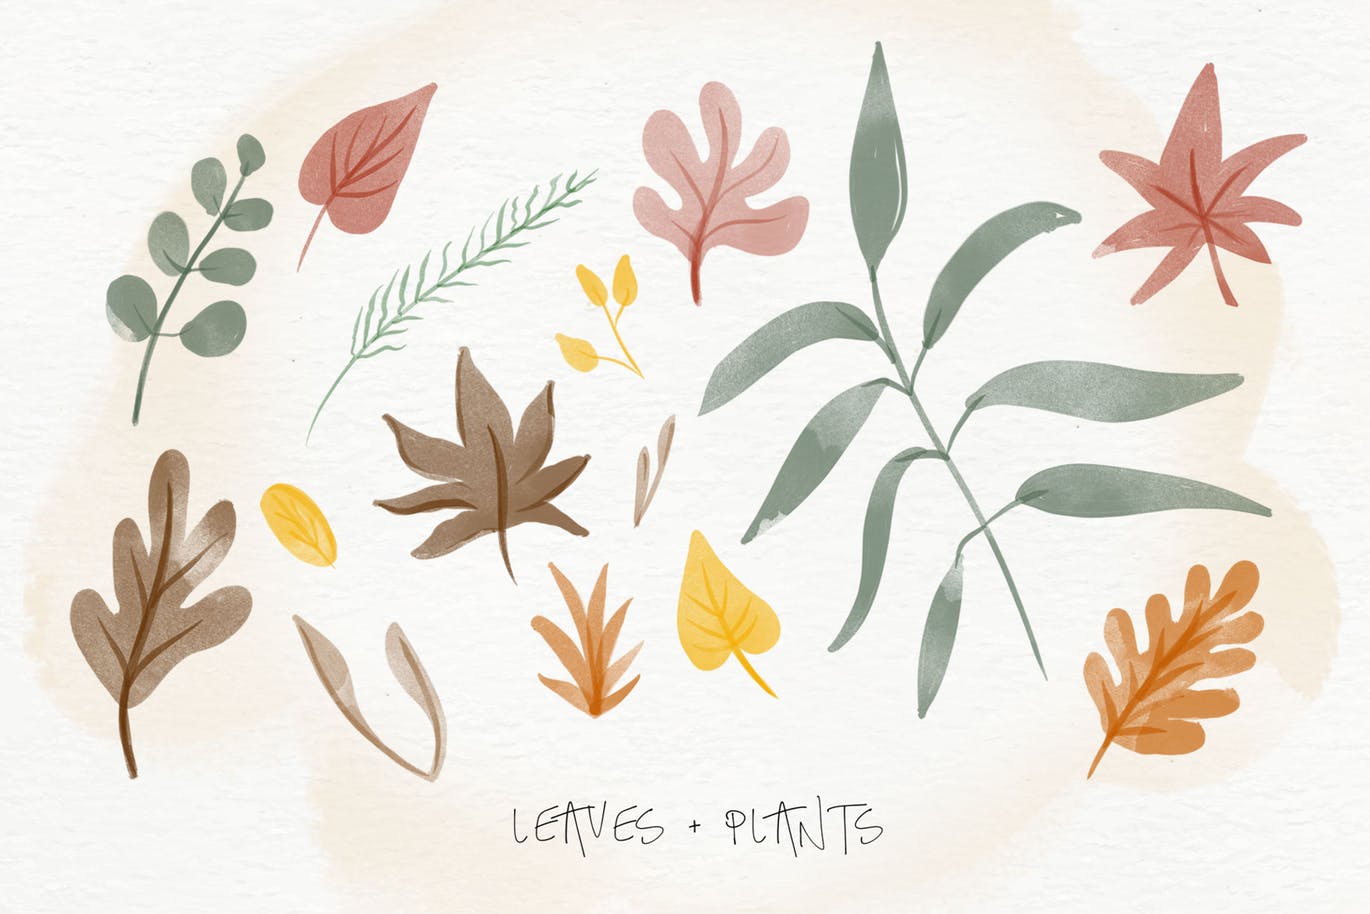 秋天主题水彩手绘图案设计素材包 Autumn Watercolor Kit插图(5)